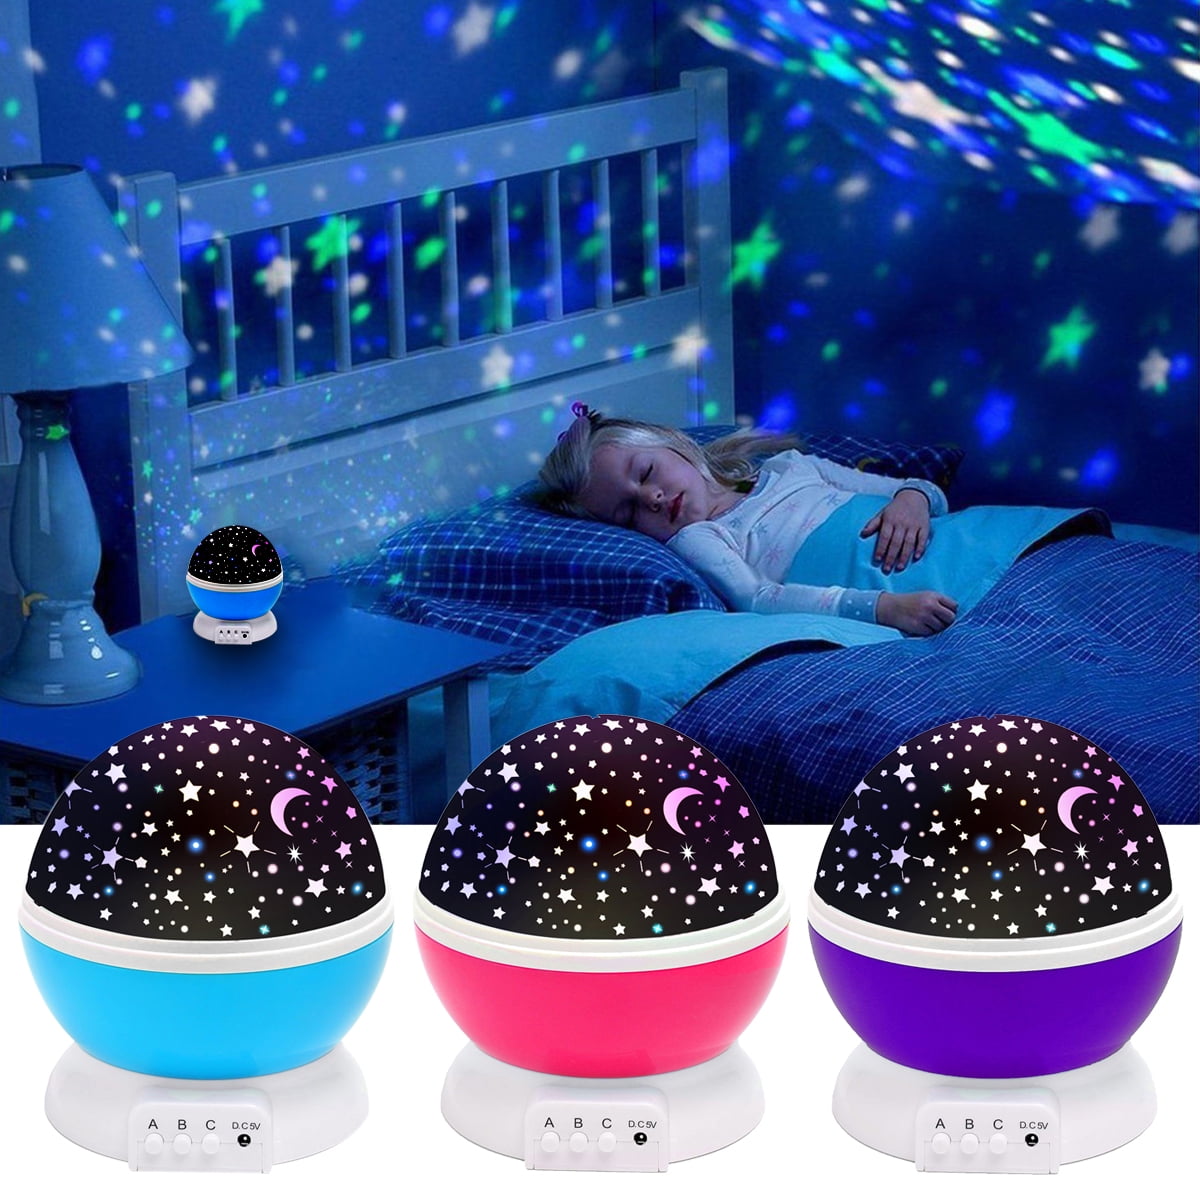 3D LED Night Light Lamps Color Change For Kids Baby Bedside Bedroom Decoration 